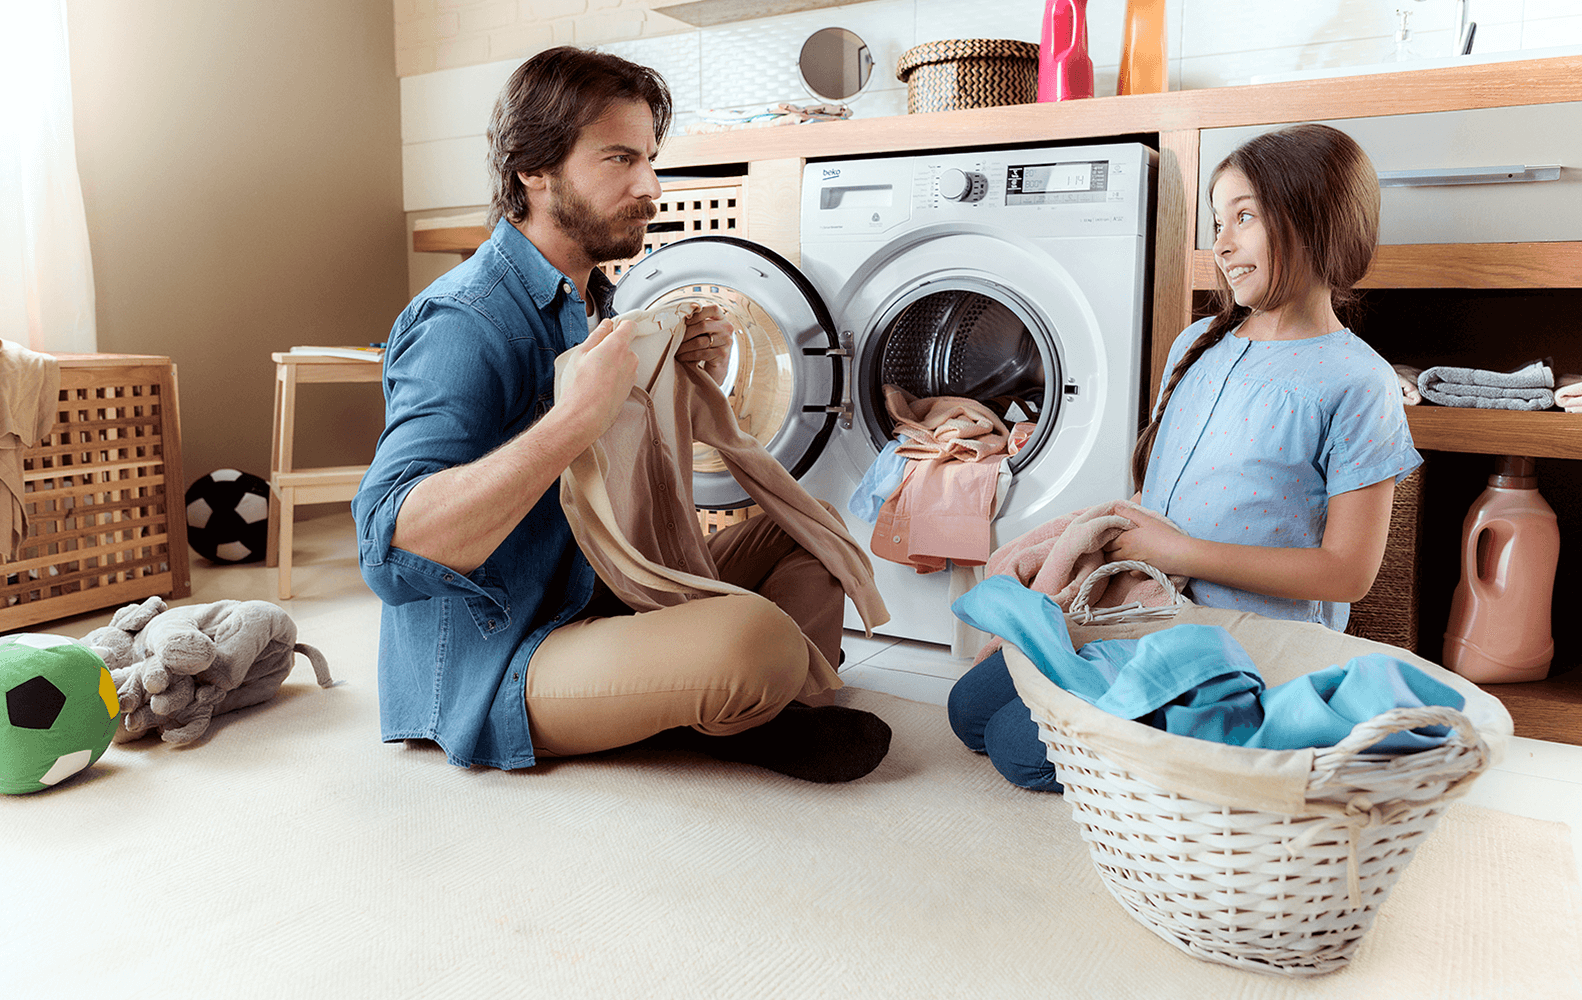 Какой фирмы стиральная машина лучше: мнения и отзывы?